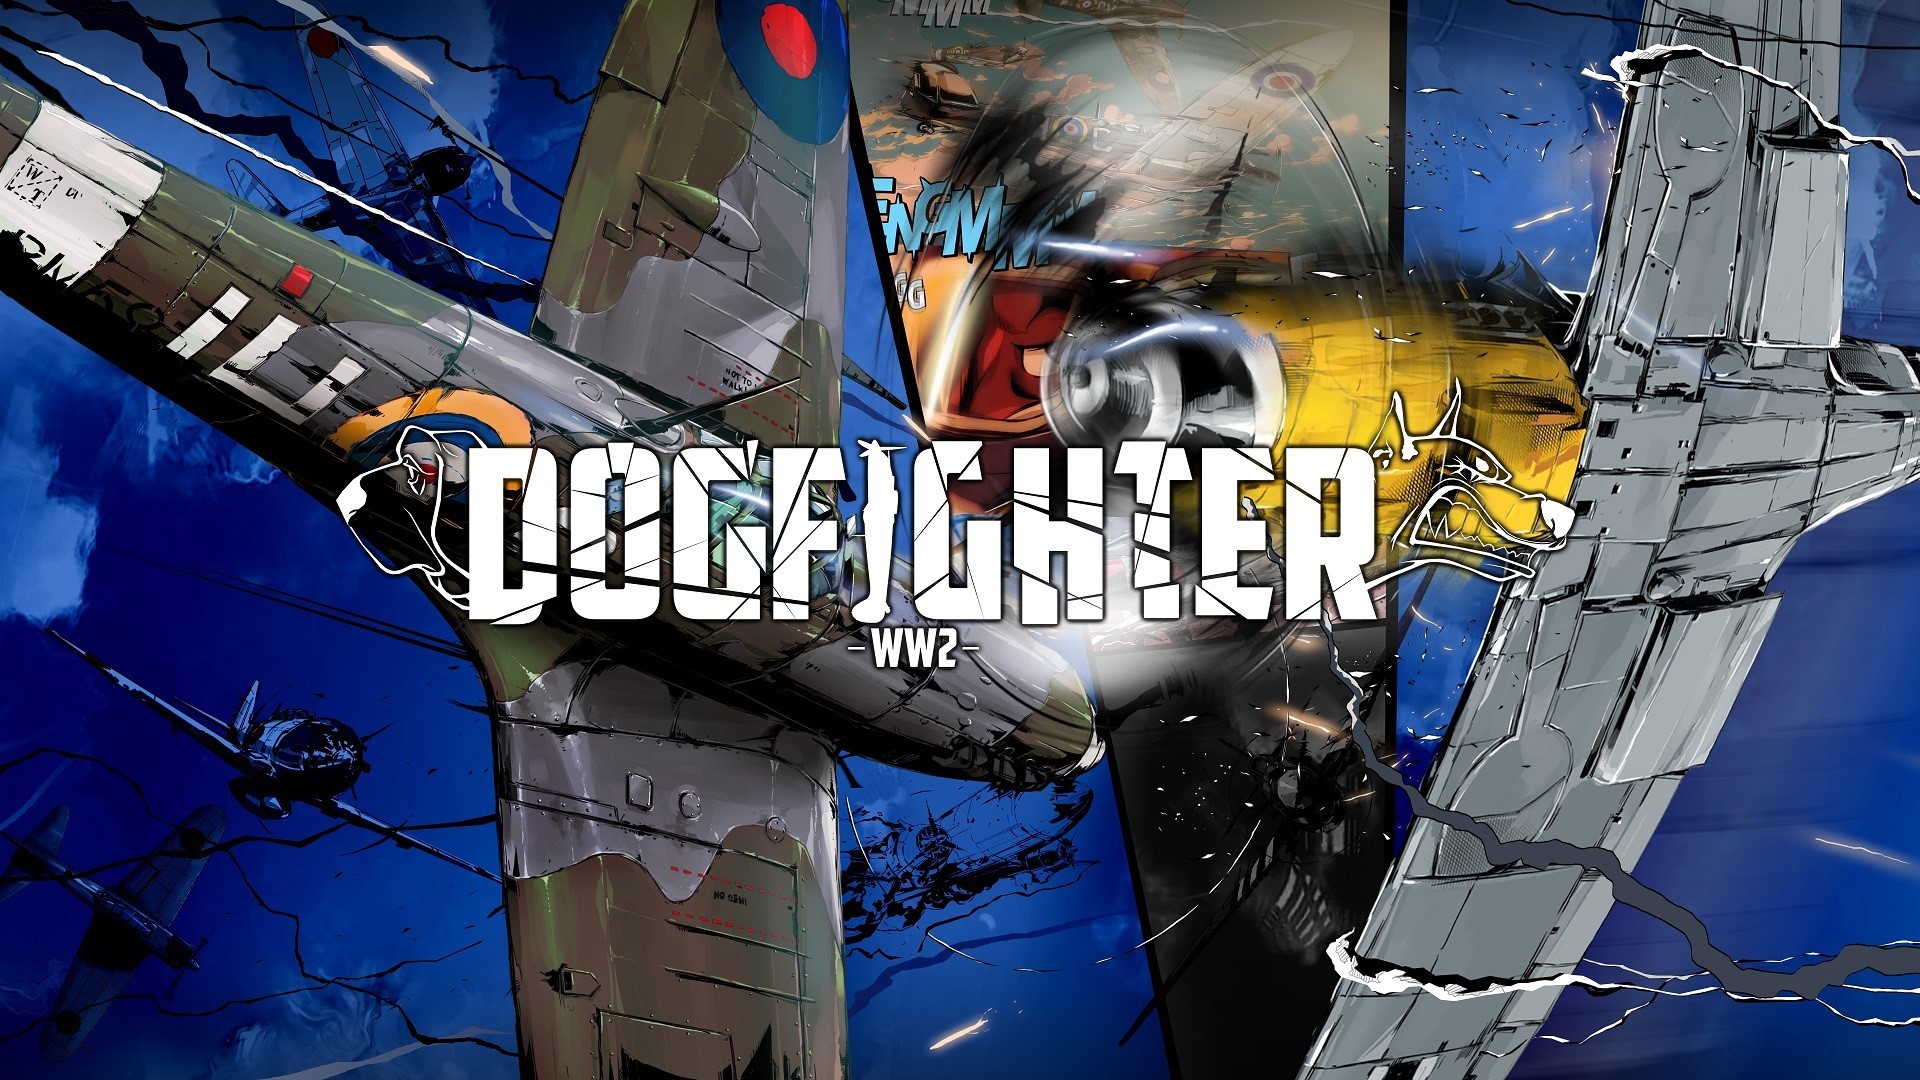 PlayStation(R)4専用 空のバトルロイヤル
［DOGFIGHTER -WW2-］アップデート公開